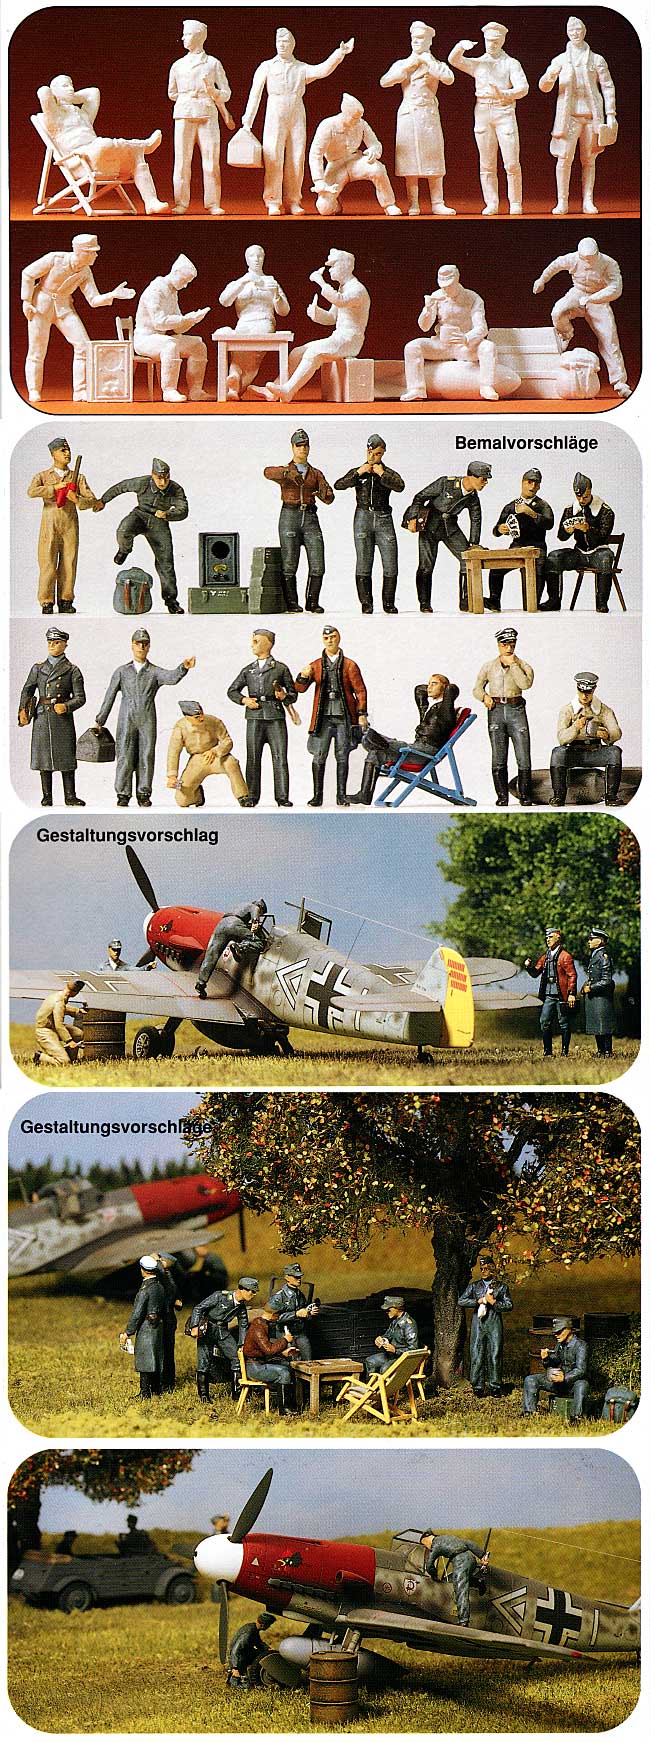 WW2 ドイツ空軍 パイロット & グランドクルー (13体） プラモデル (プライザー 1/48 精密プラ製フィギュア No.67001) 商品画像_1